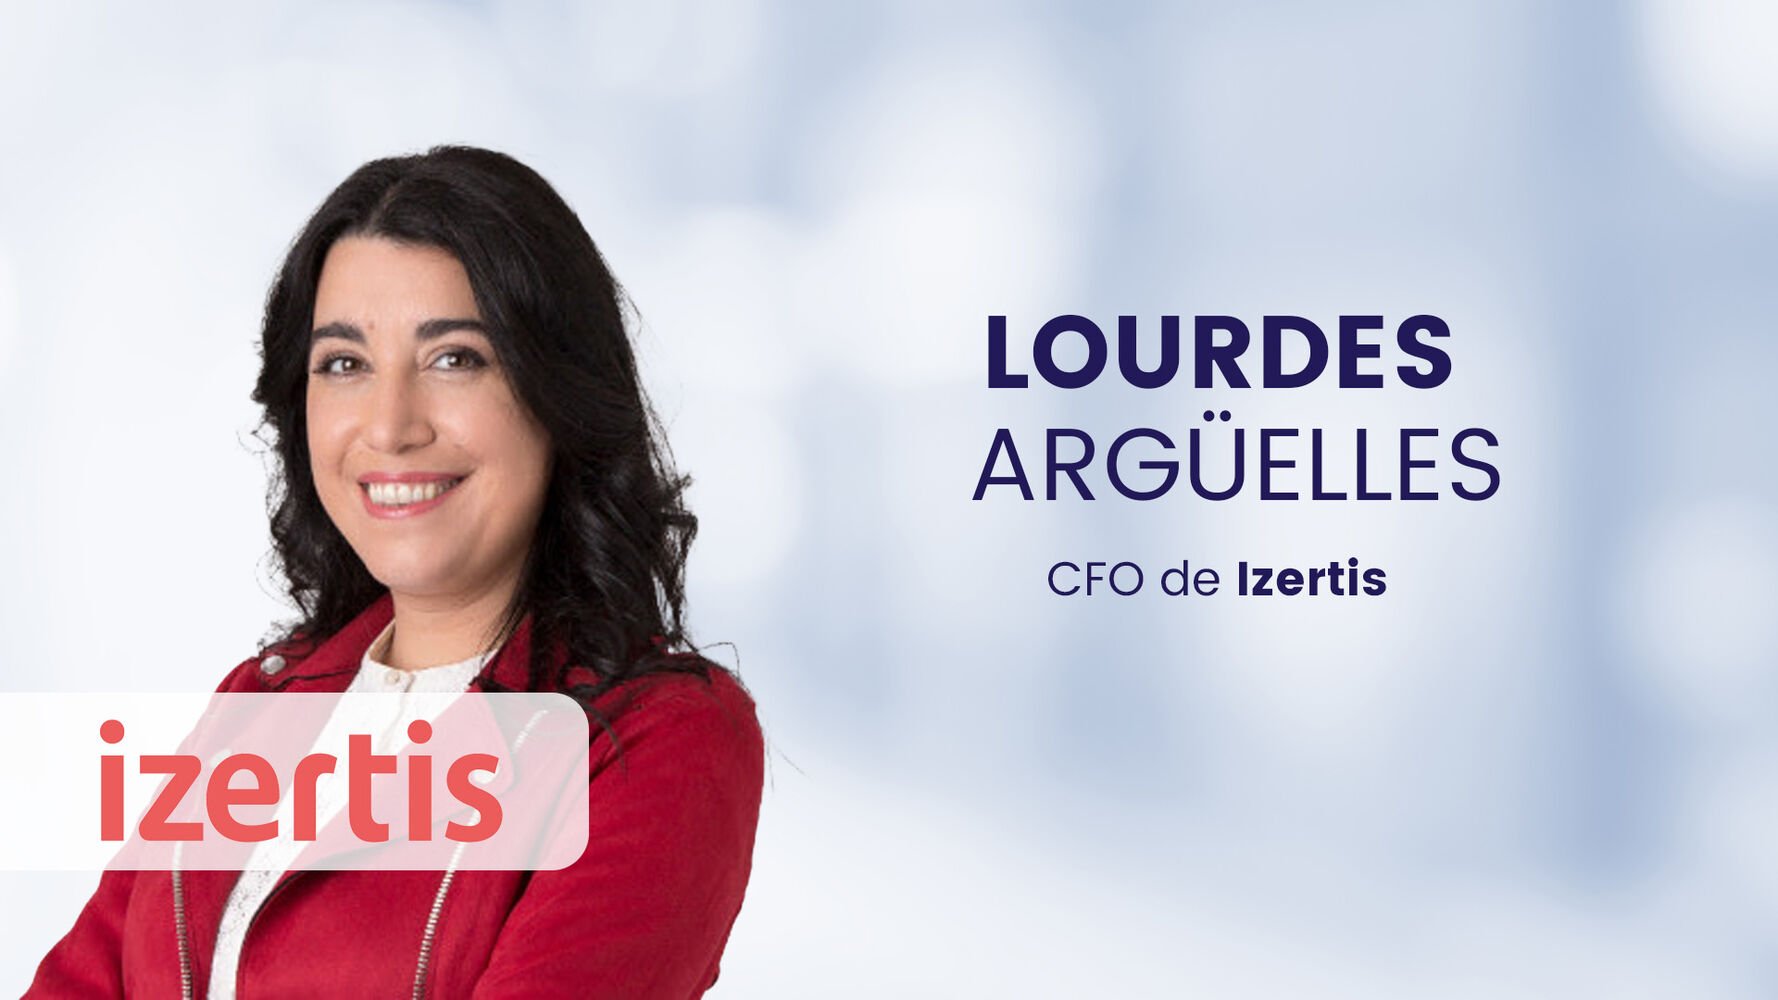 Lourdes Argüelles